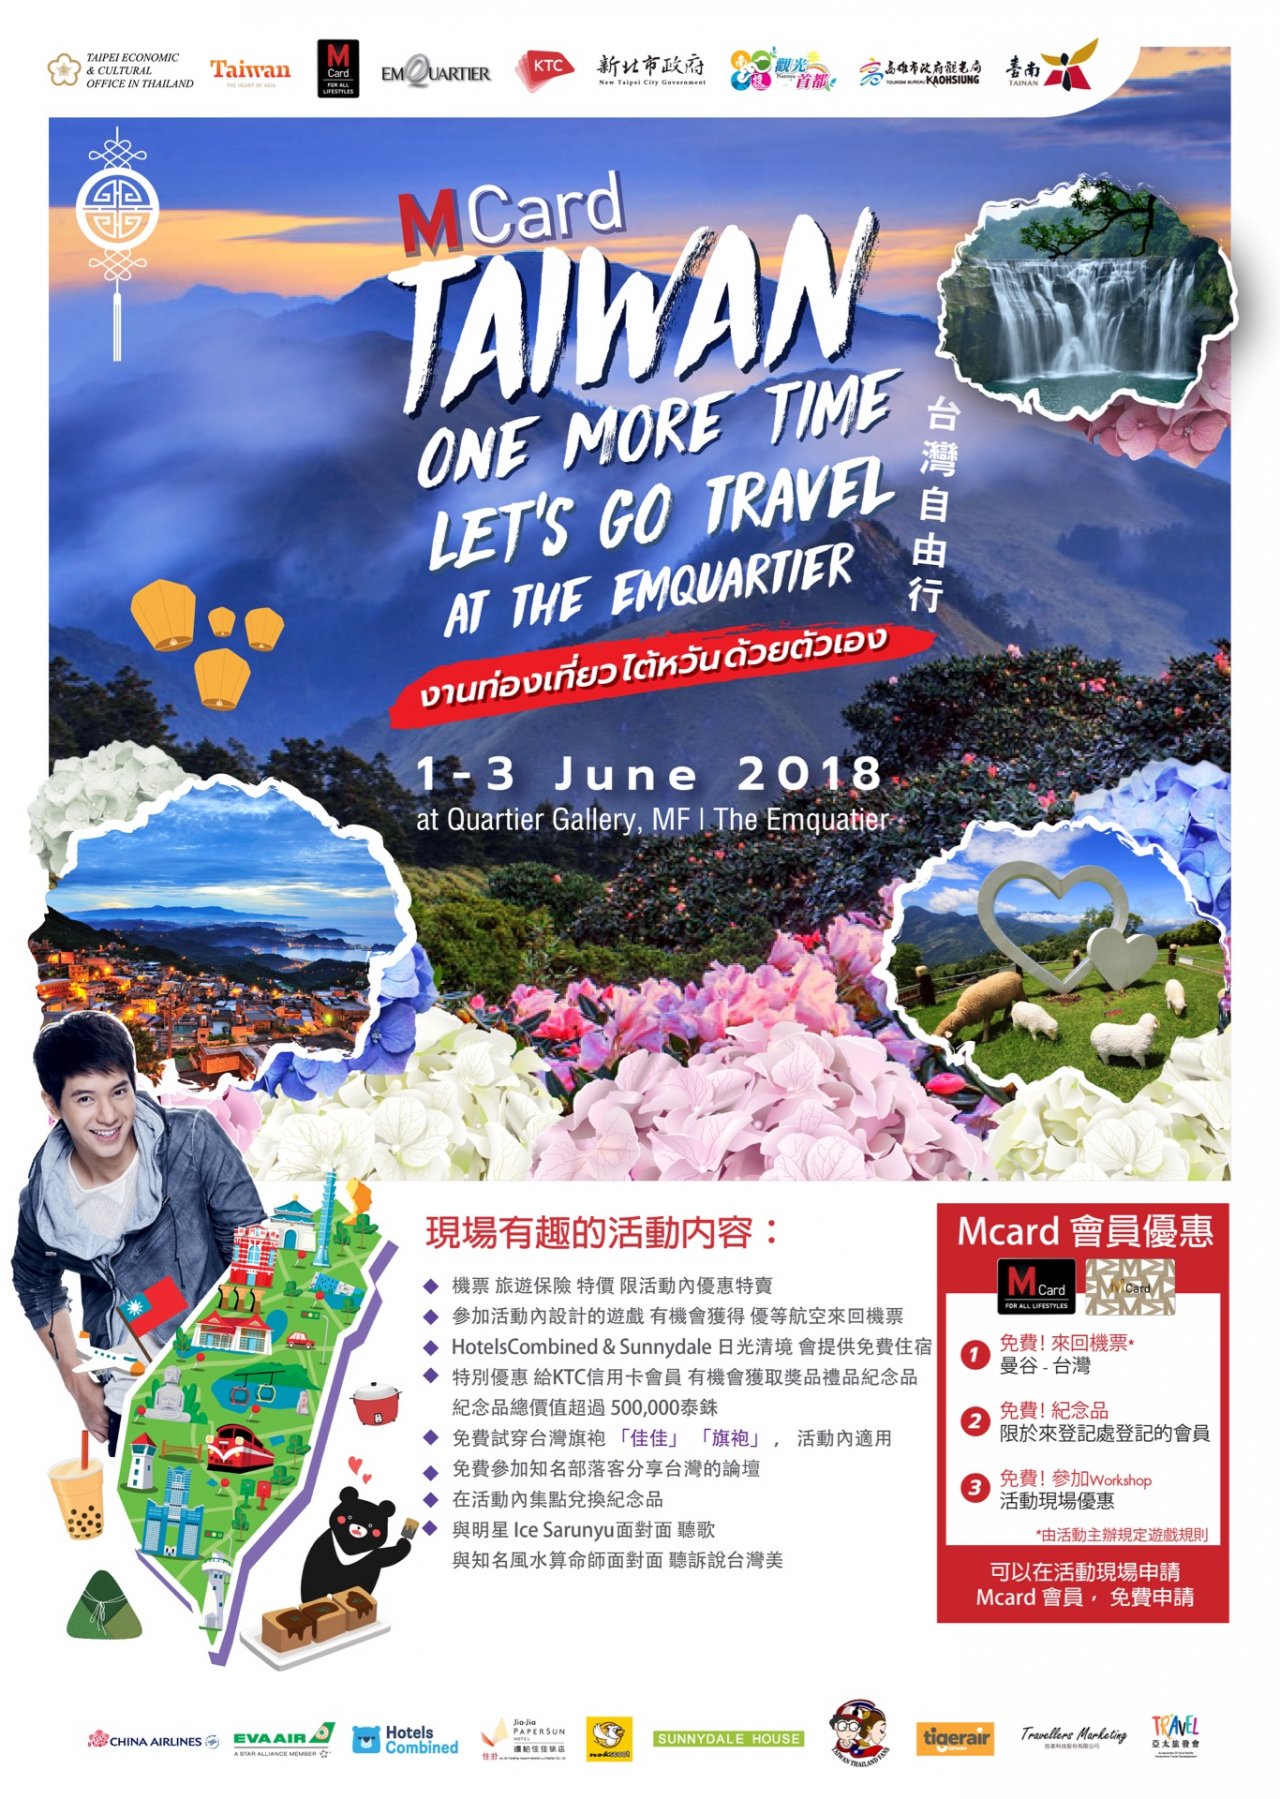 「再遊台灣」旅展 6月1至3日曼谷登場